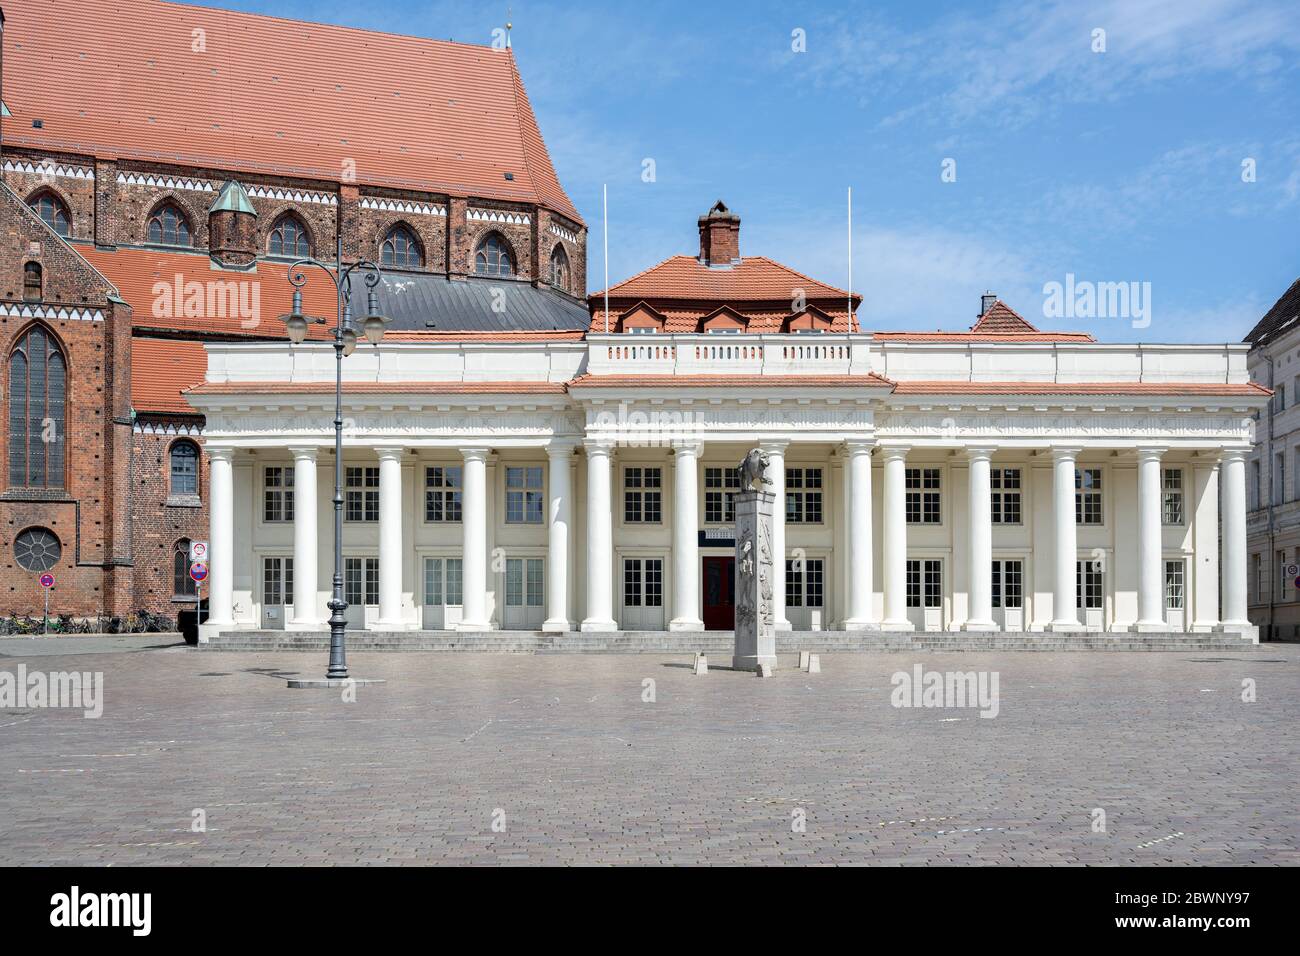 Weißes Säulengebäude, die ehemalige Markthalle auf dem Marktplatz in der Stadt Schwerin, Hauptstadt Mecklenburg-Vorpommerns, blauer Himmel Stockfoto